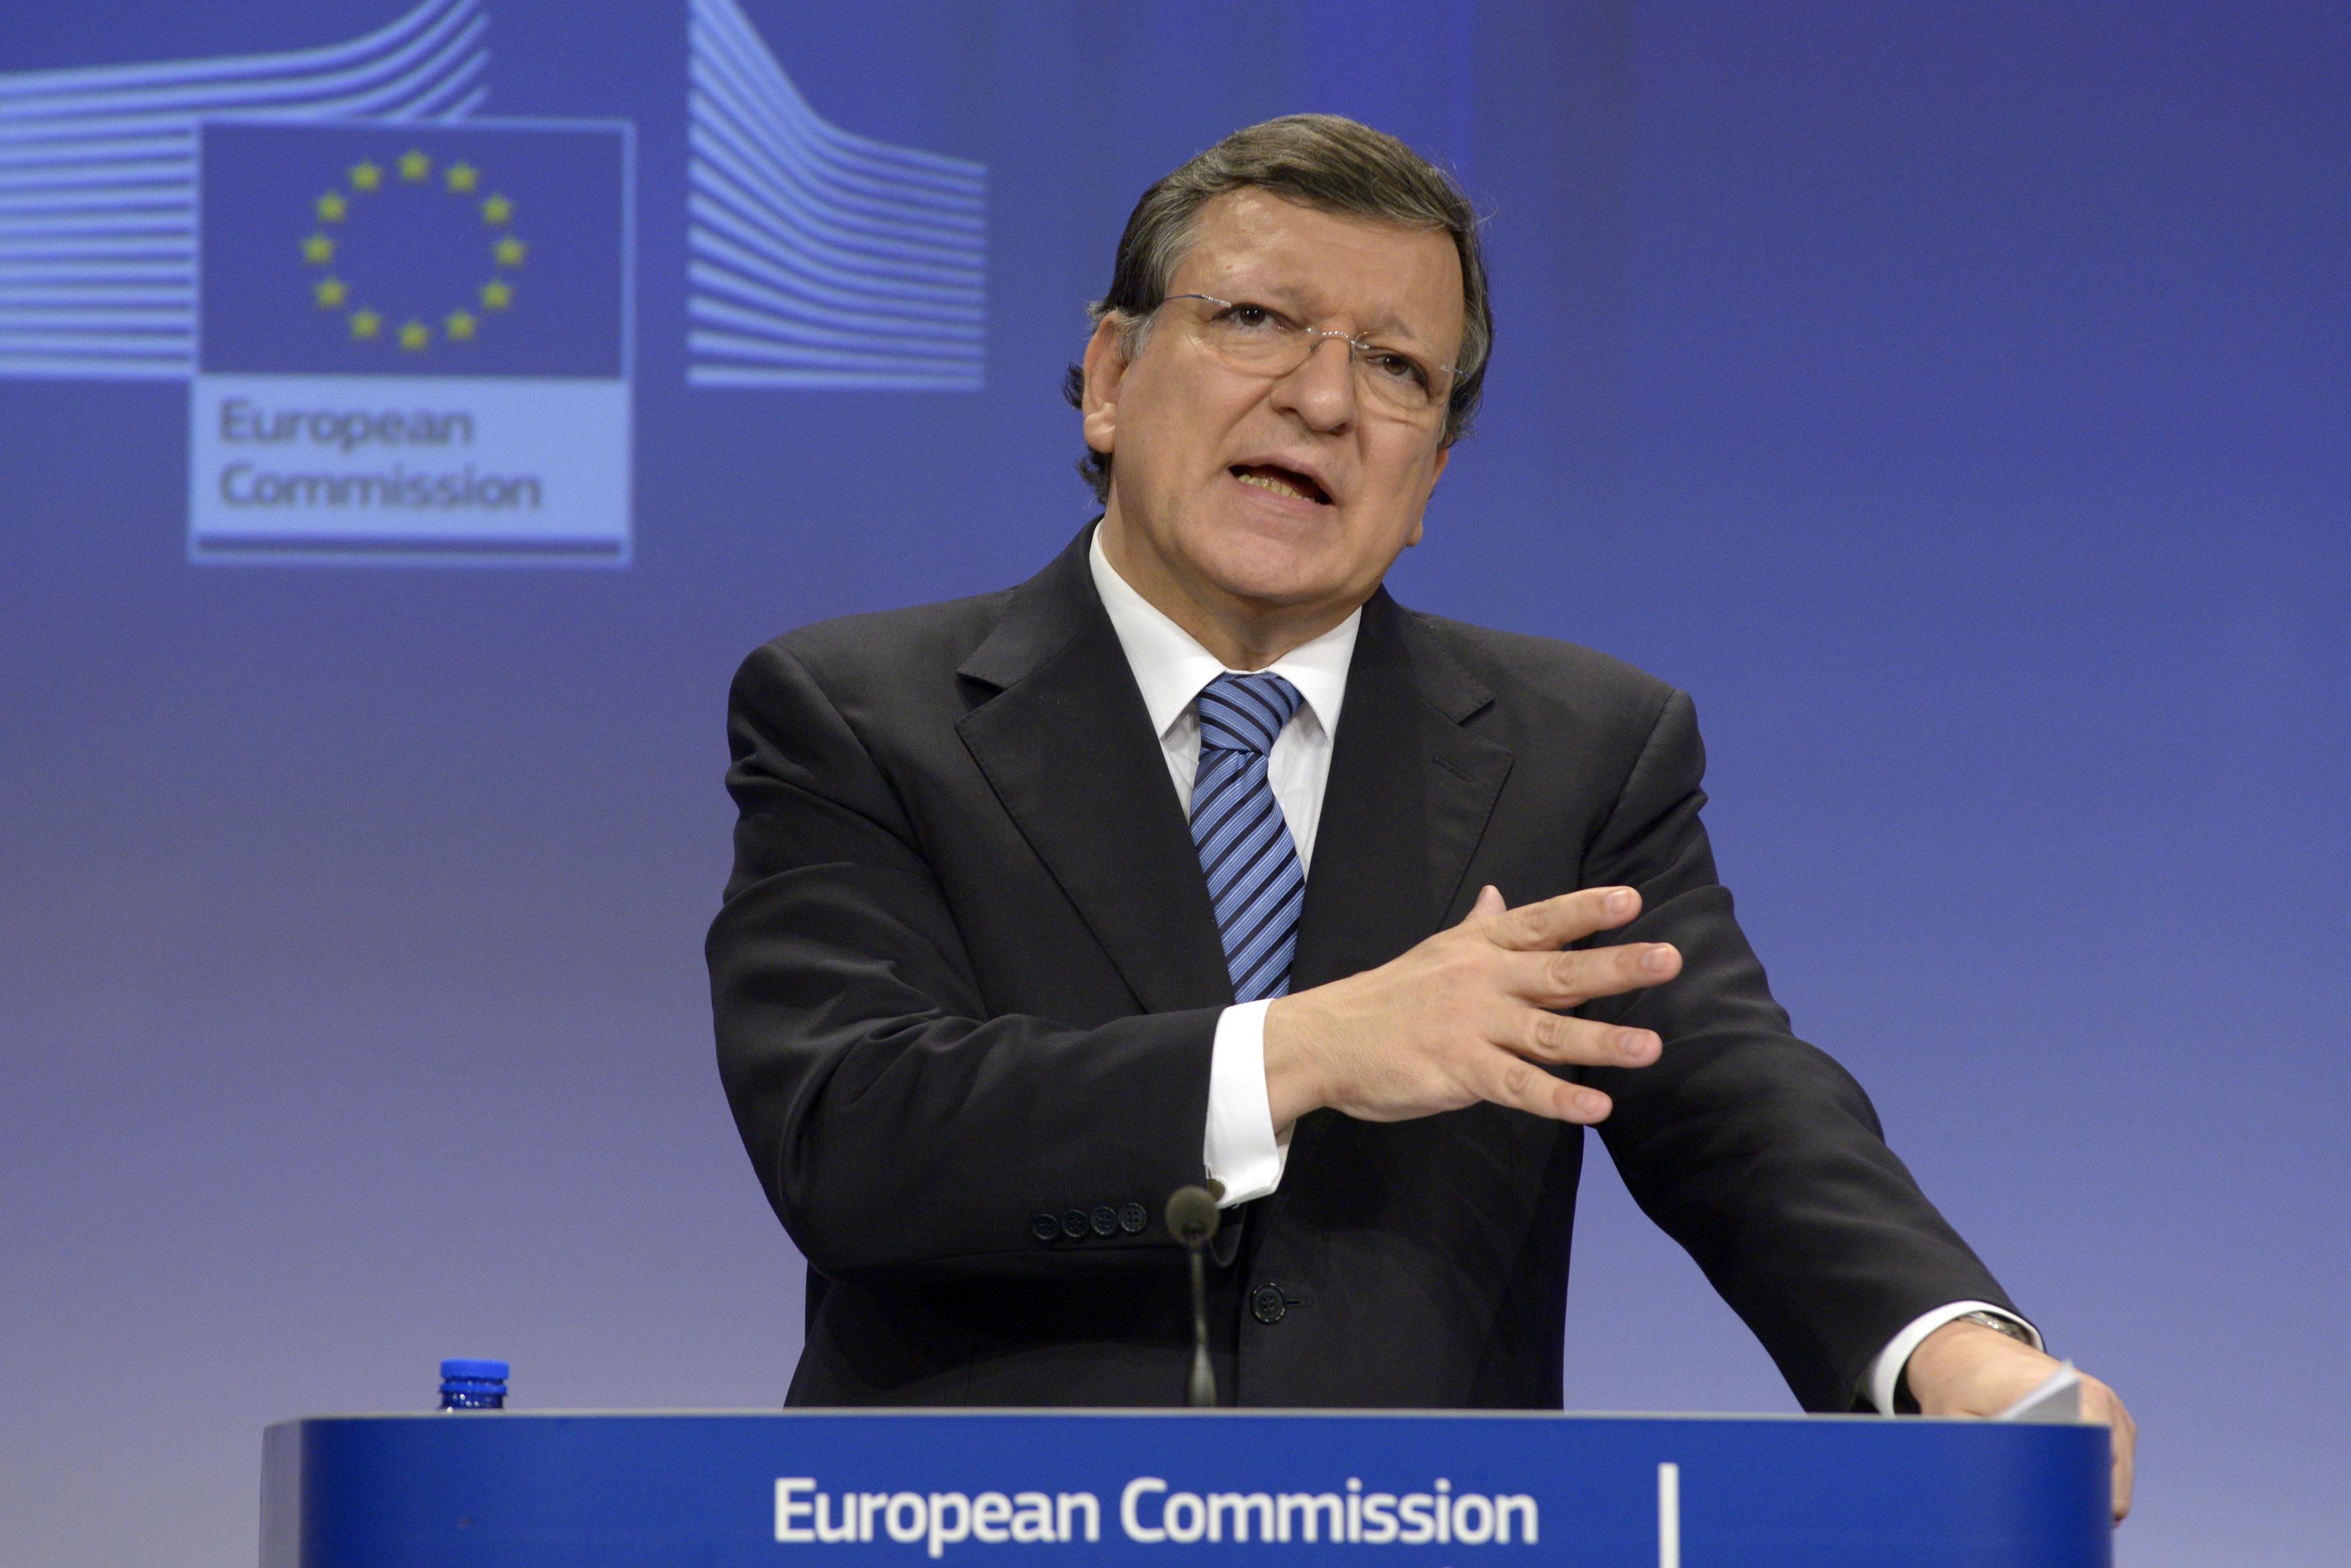 Κομισιον: Δεν συζητήσαμε στο Eurogroup τρίτο πακέτο για την Ελλάδα